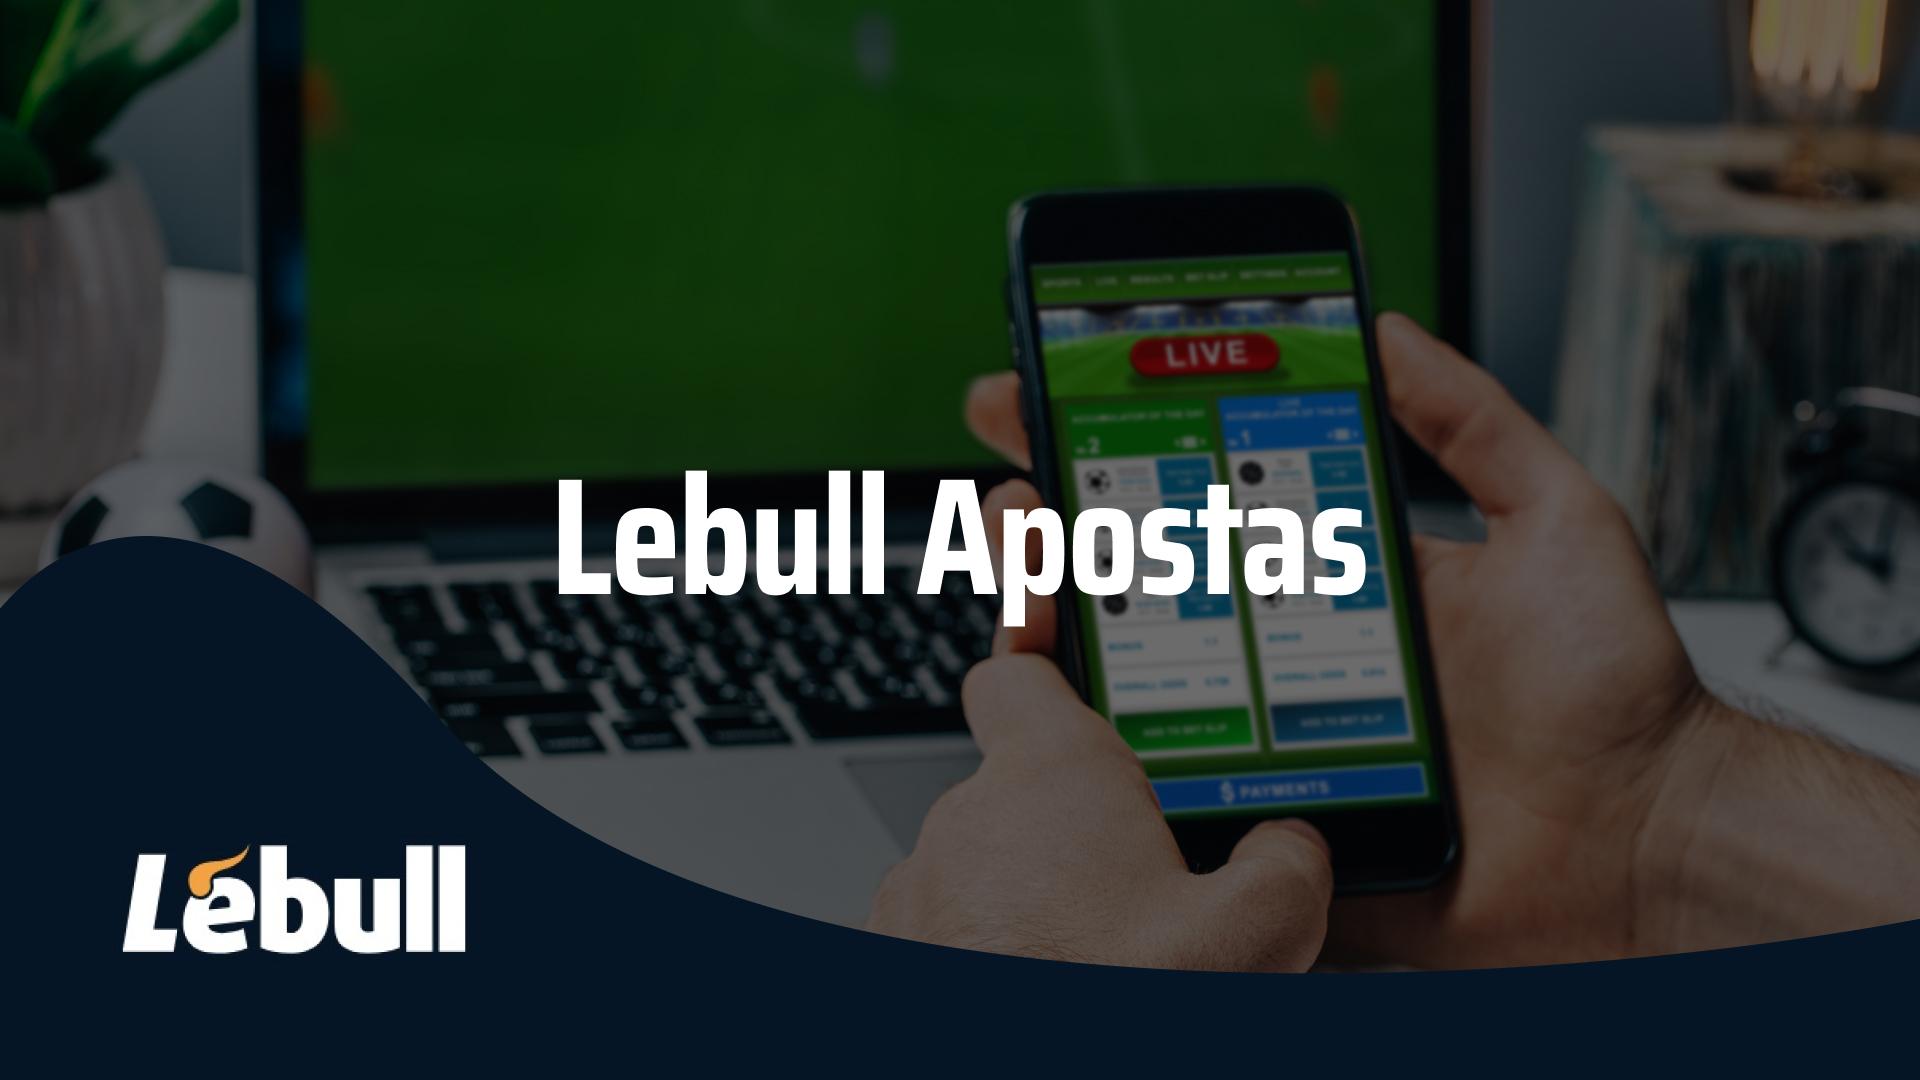 LeBull apostas - LeBull Apostas [BONUS operateur="Month"/] [year]: Descubra a Nova Casa de Apostas Desportivas